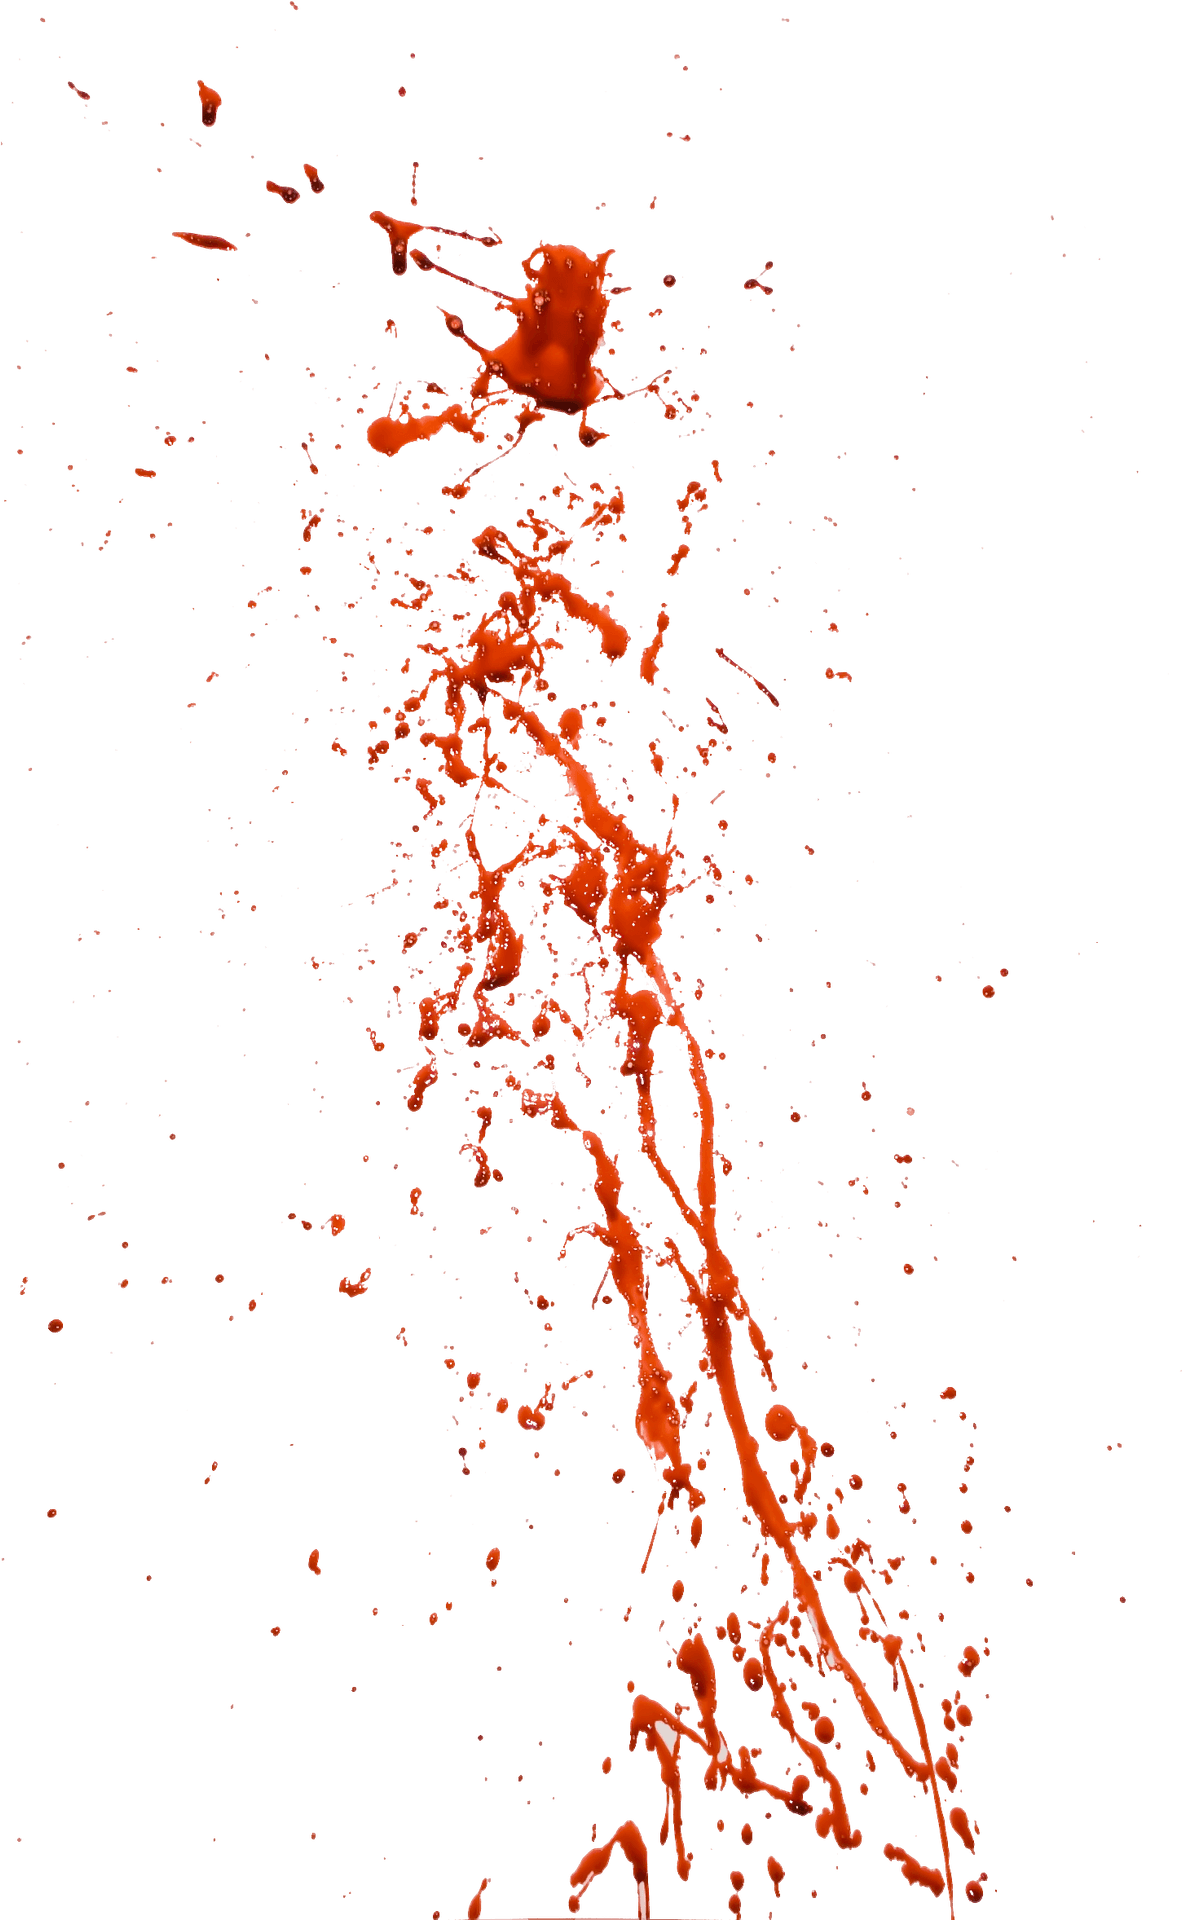 Red Splatter Against Teal Background PNG image